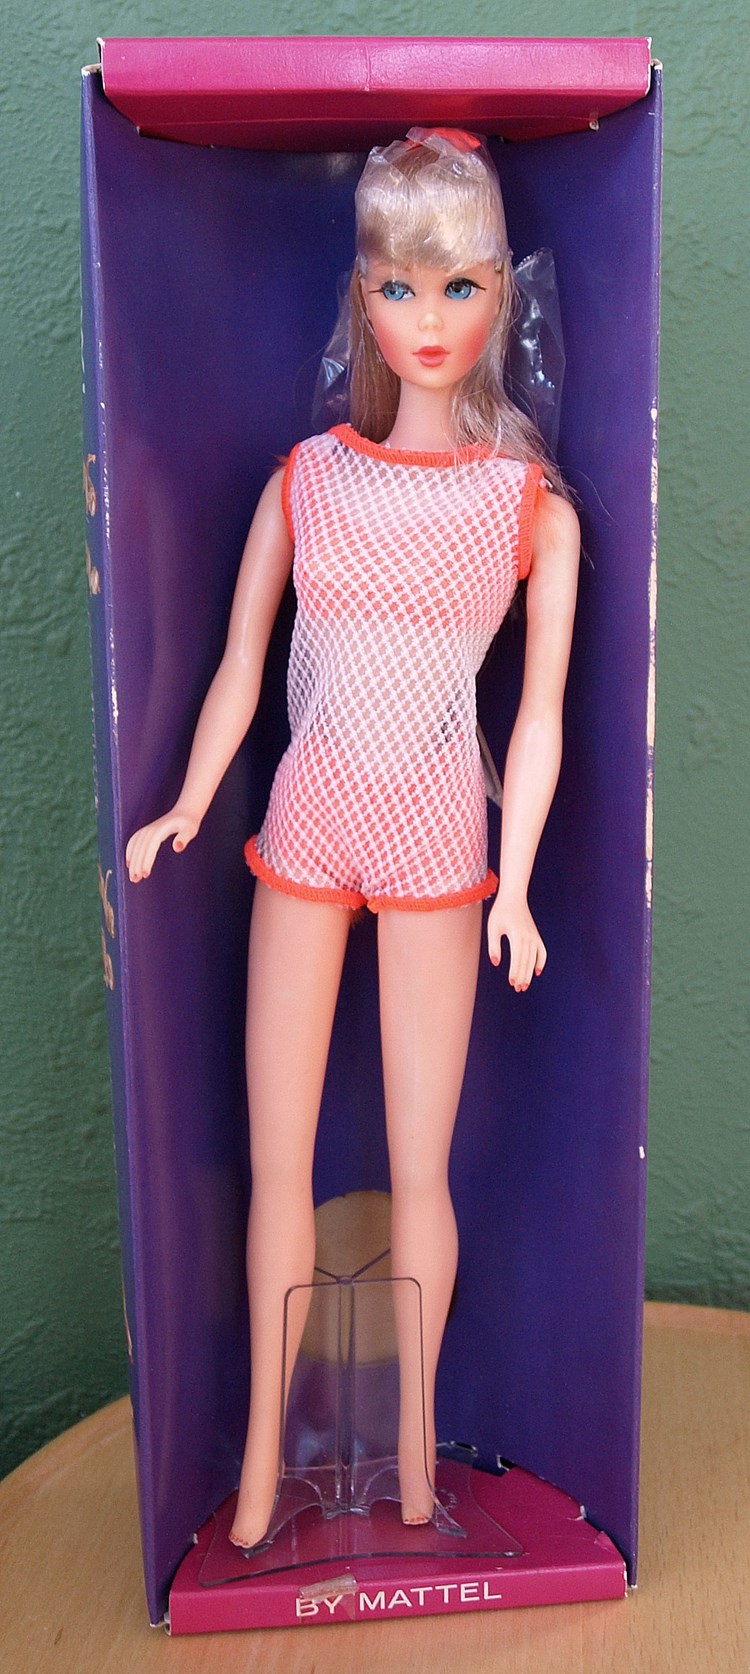 Twist 'n Turn-Barbie. Hun er 4.000-5.000 kroner værd